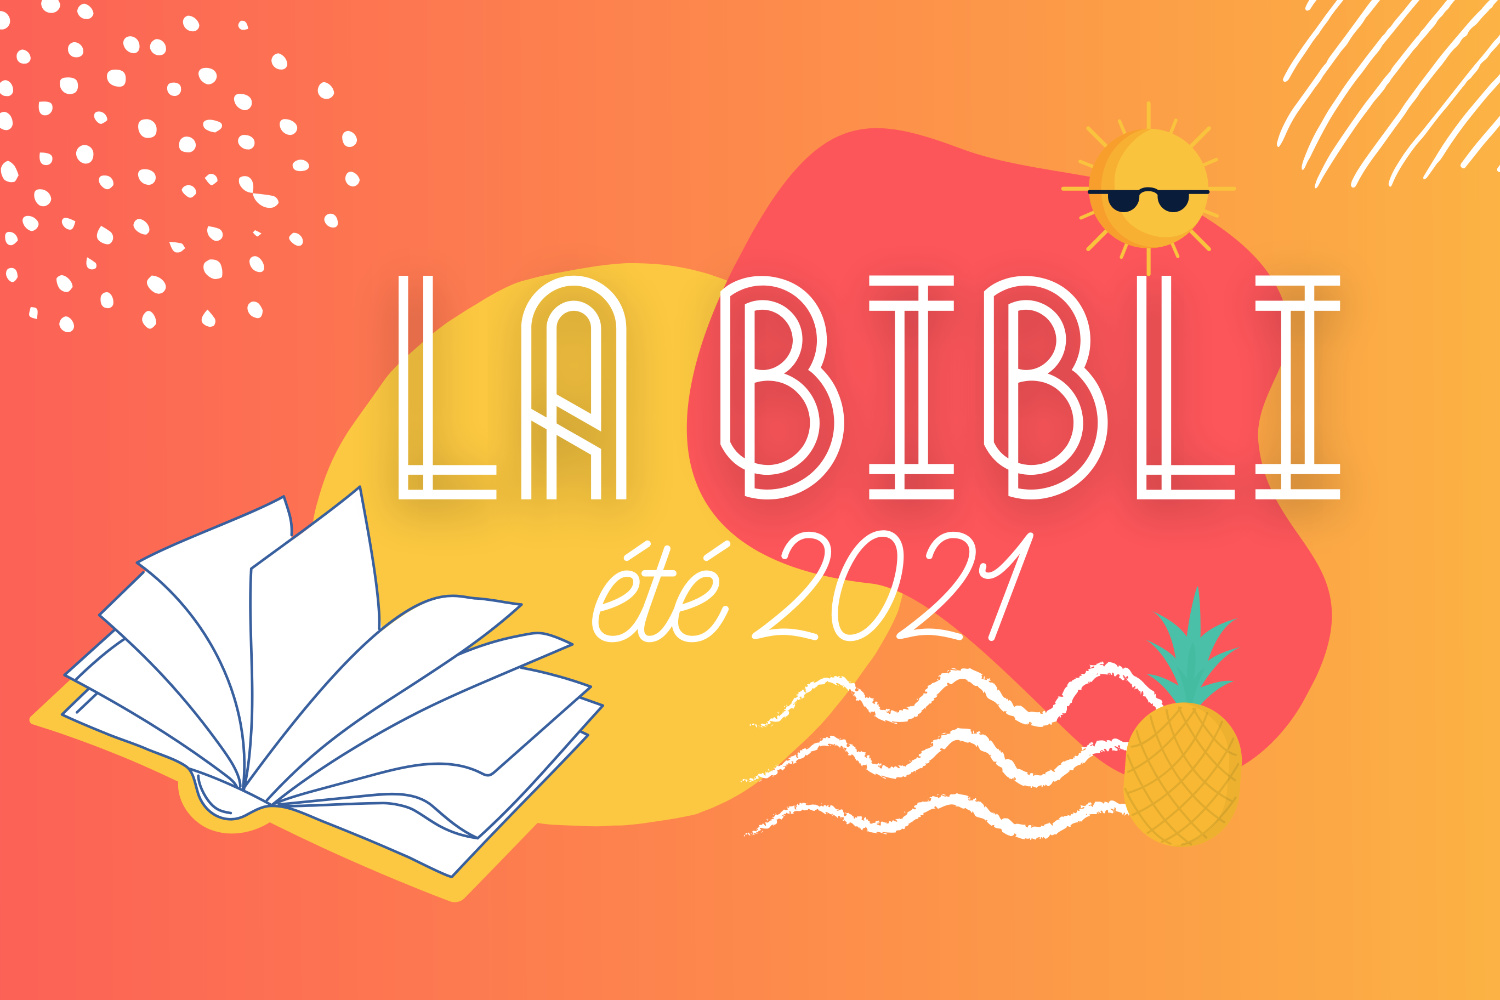 Illustration colorée en rouge et jaune avec le logo de La Bibli, un soleil et ananas.